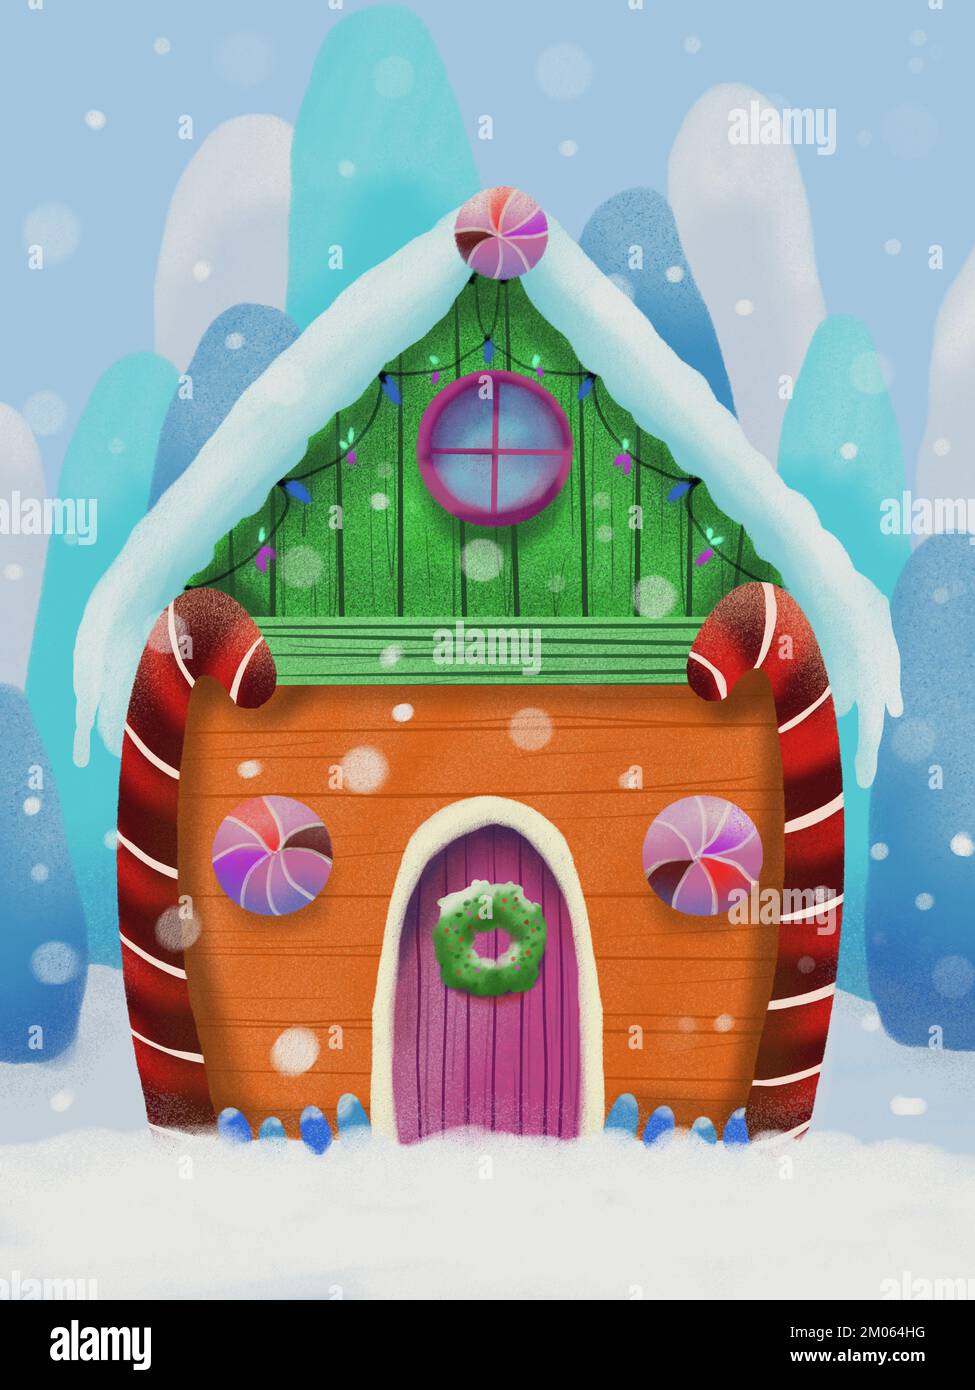 Stilisiertes Haus am Heiligabend in der Winterlandschaft mit Schnee und gemütlicher Hütte. Handgezeichnete Illustration für die Feiertage. Verschneite Landschaftszeichnung. Stockfoto